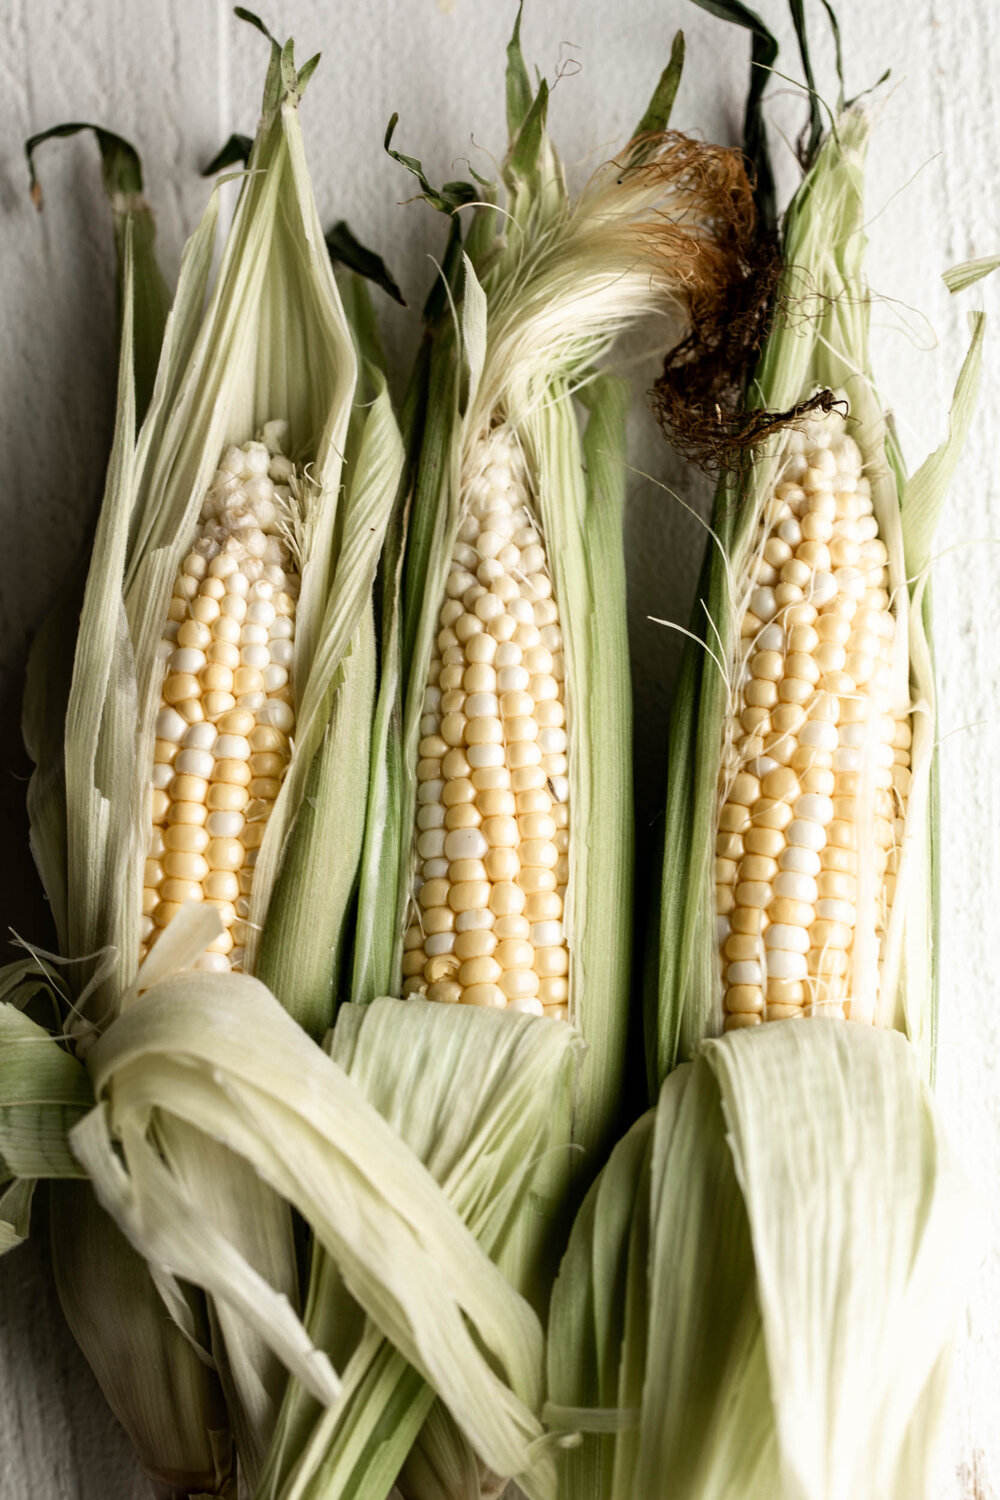 three ears of corn husks peeled back